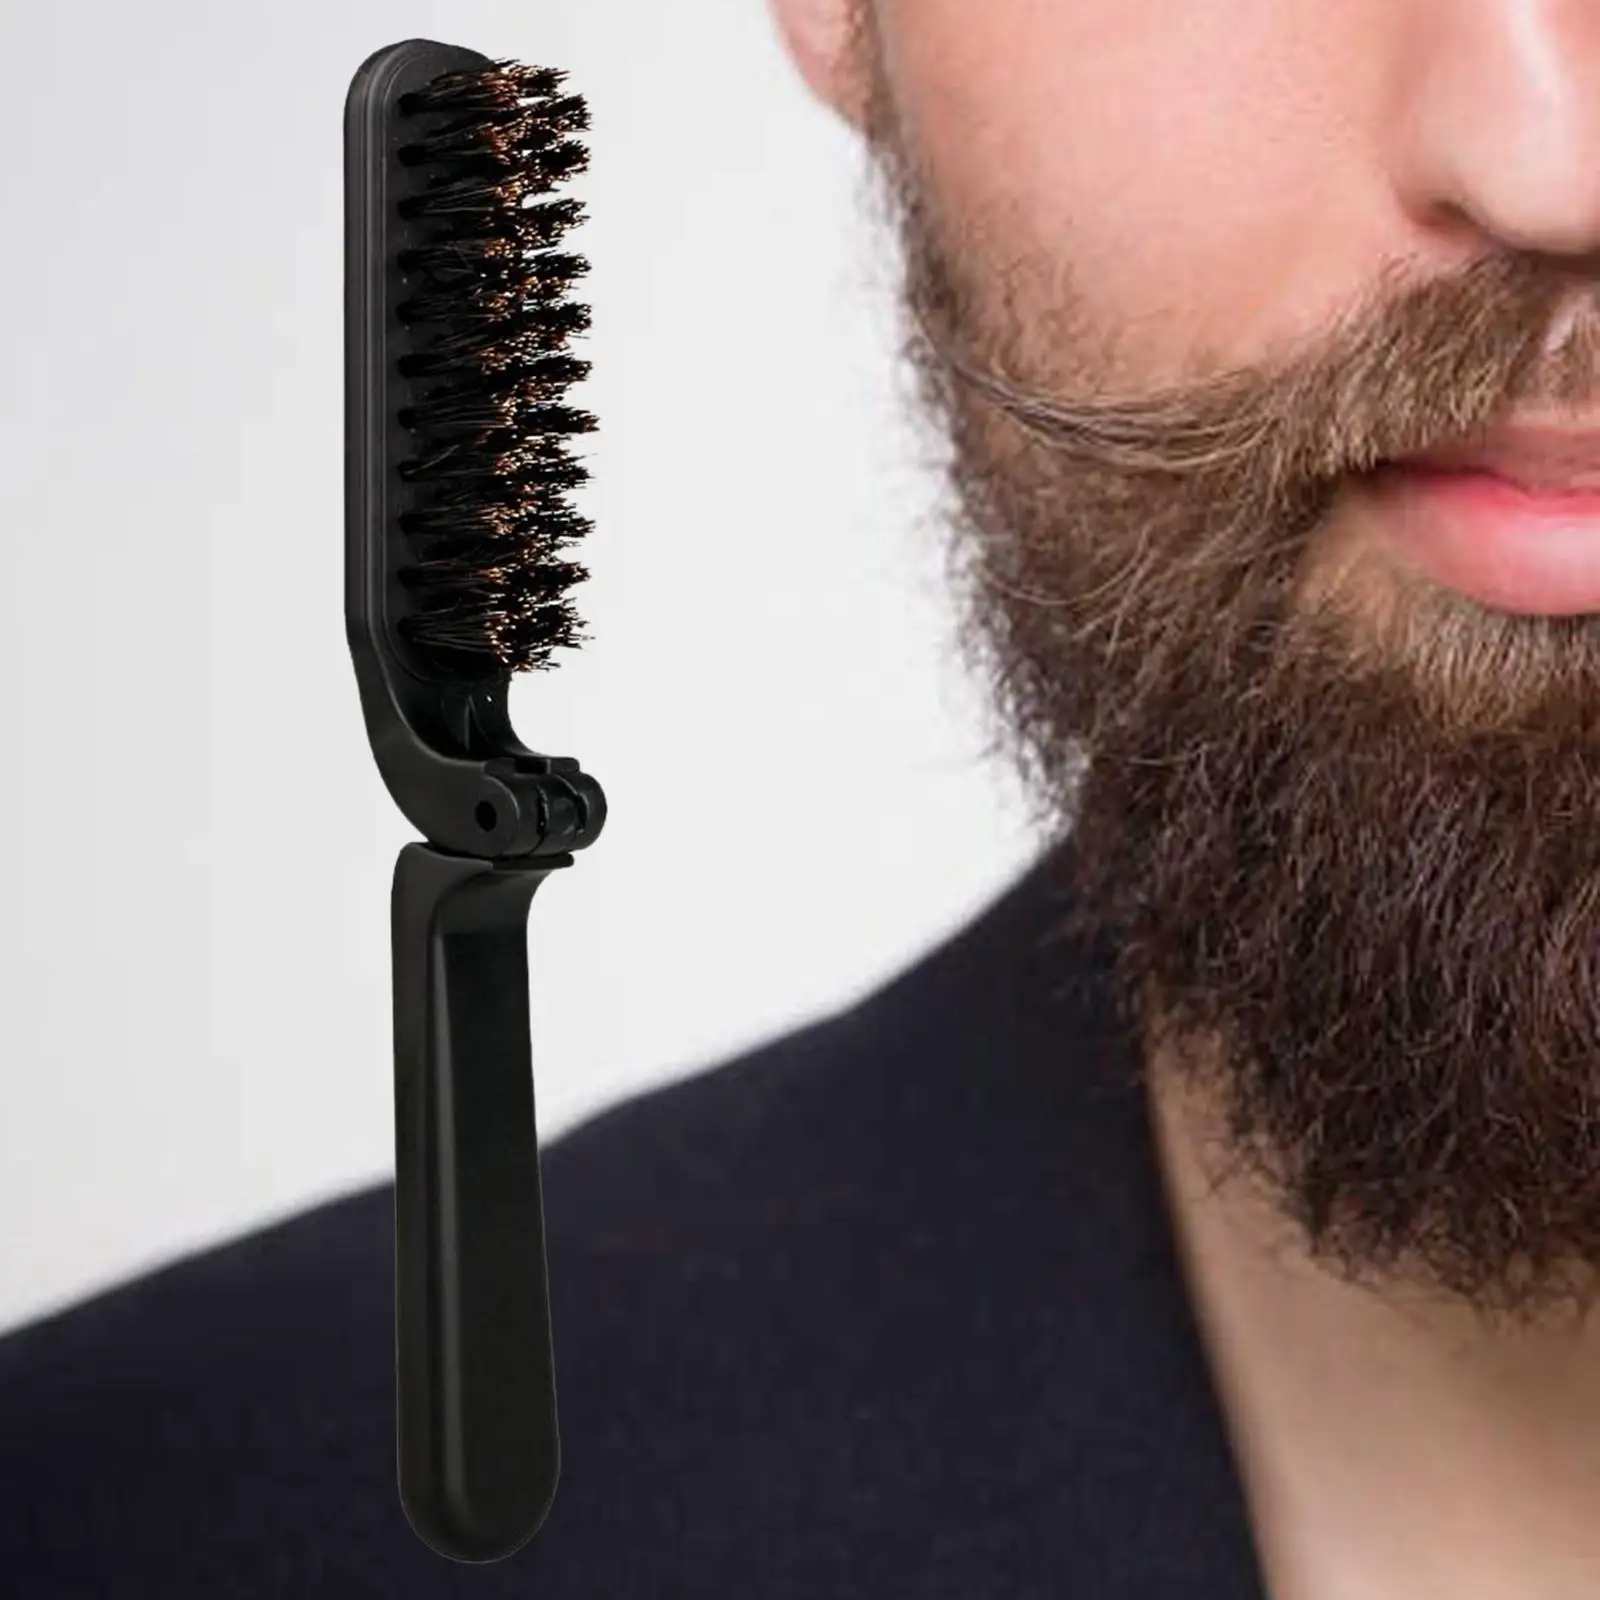 Pocket Beard Brushes Foldable for Beard Softening, Styling and Grooming Detangler Brush Portable Barber Hair Brush 